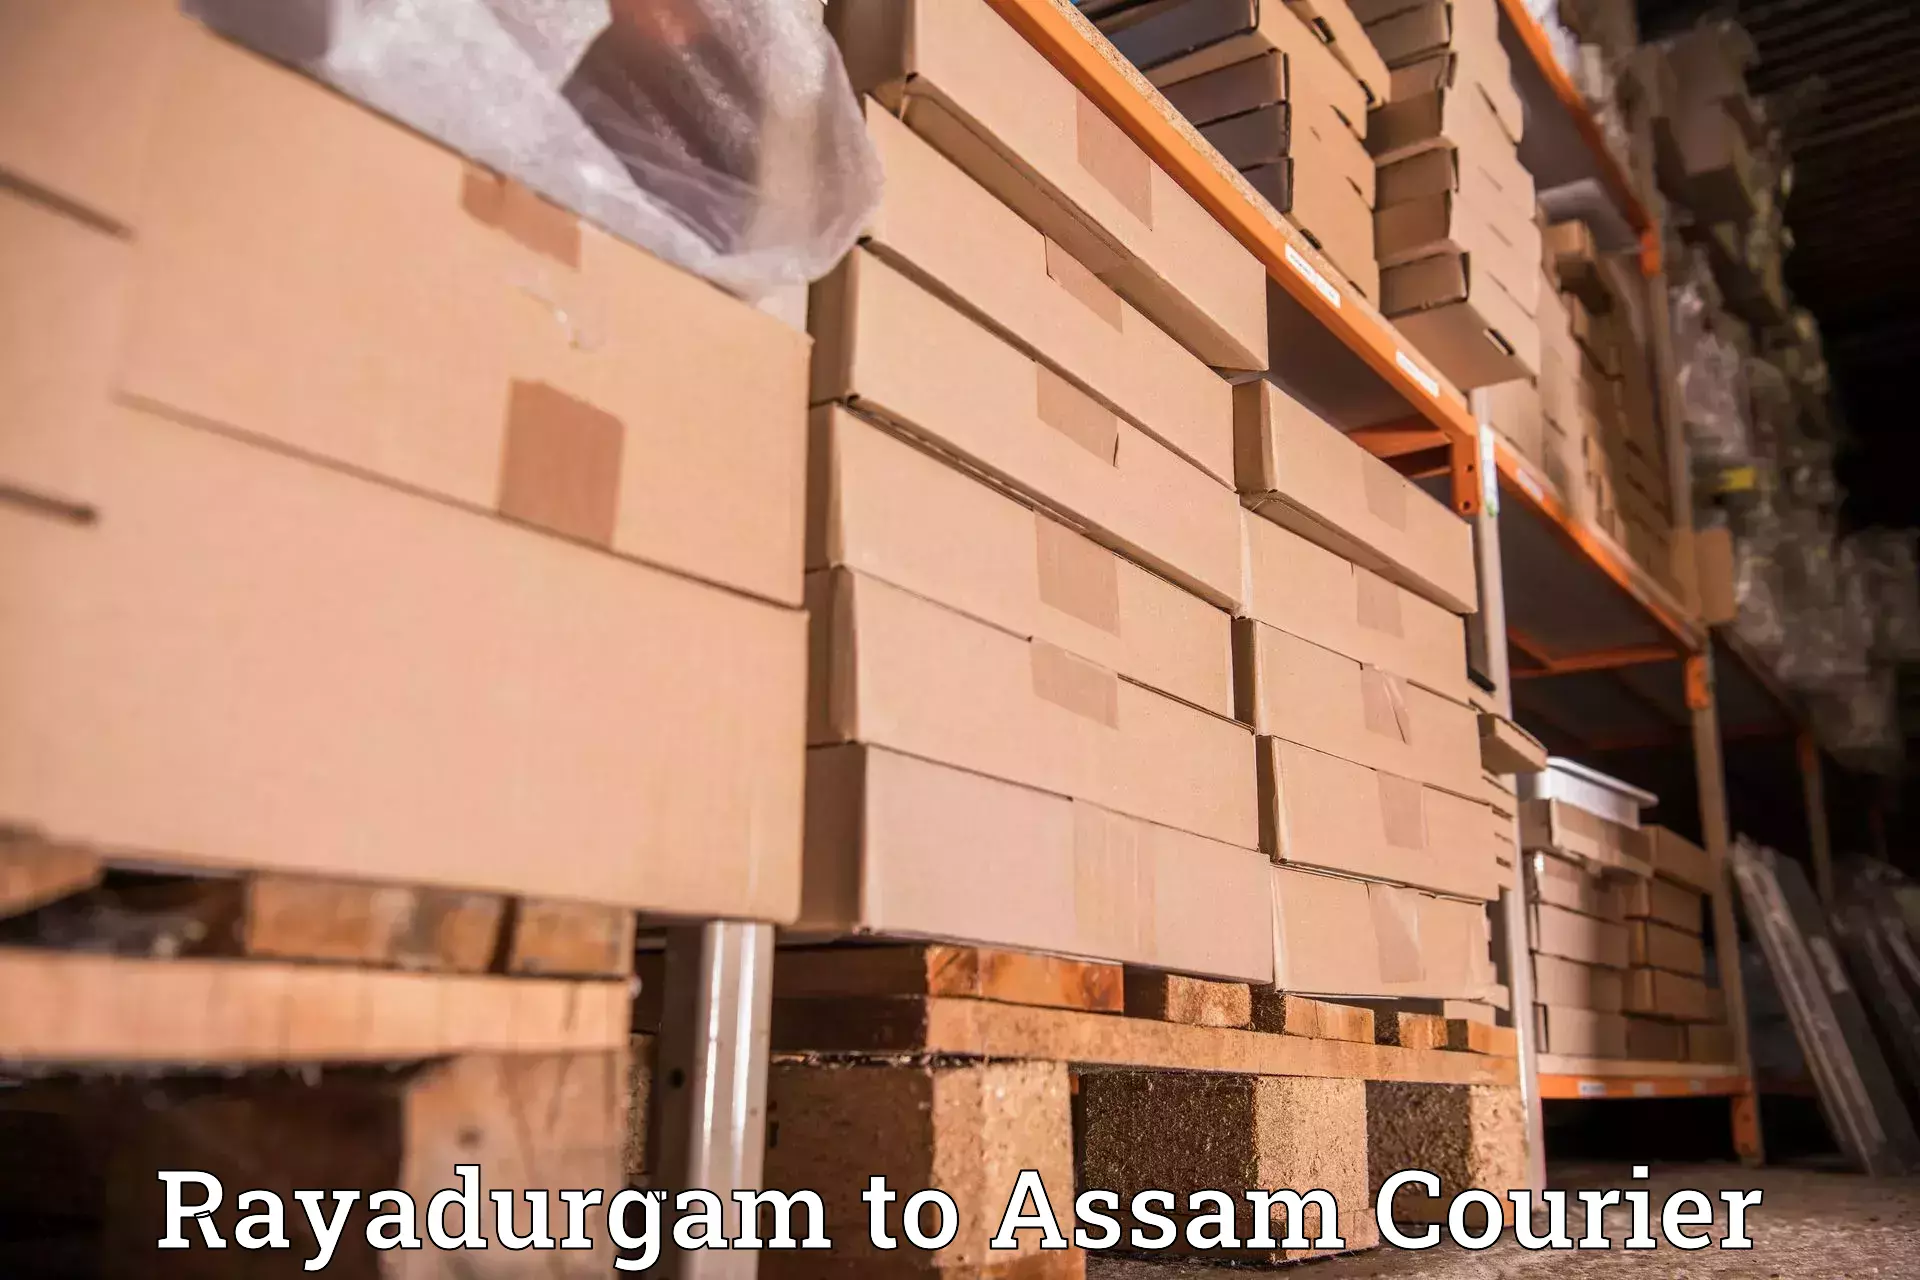 Bulk shipment in Rayadurgam to Dibrugarh University